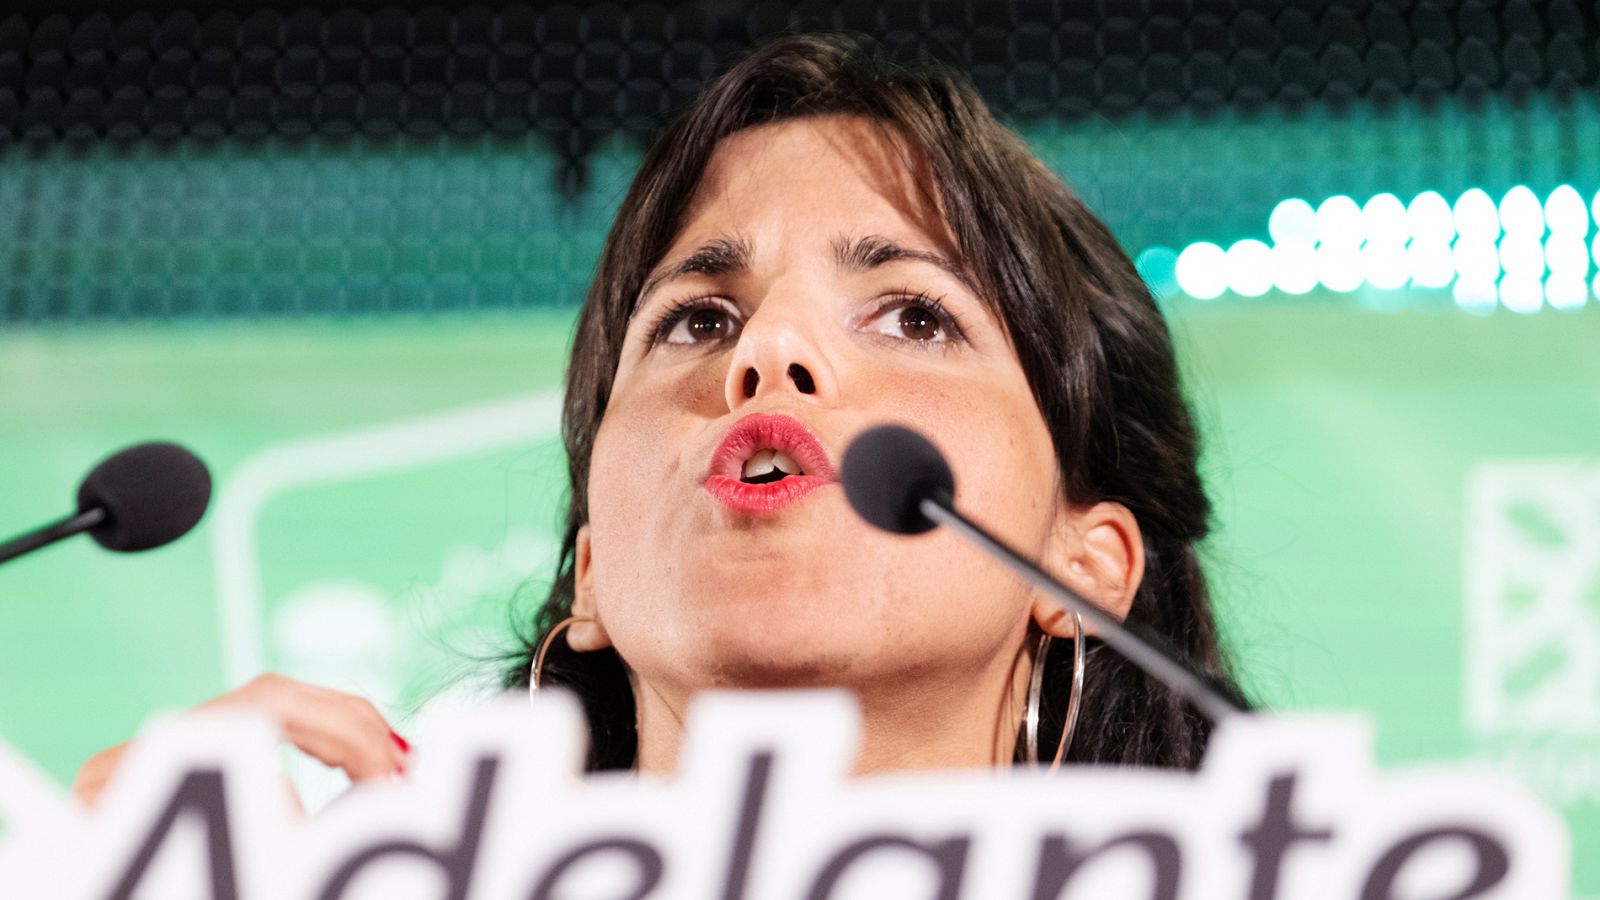 Abuso sexual: Condenado por abuso sexual el empresario que simuló besar a Teresa Rodríguez - RTVE.es